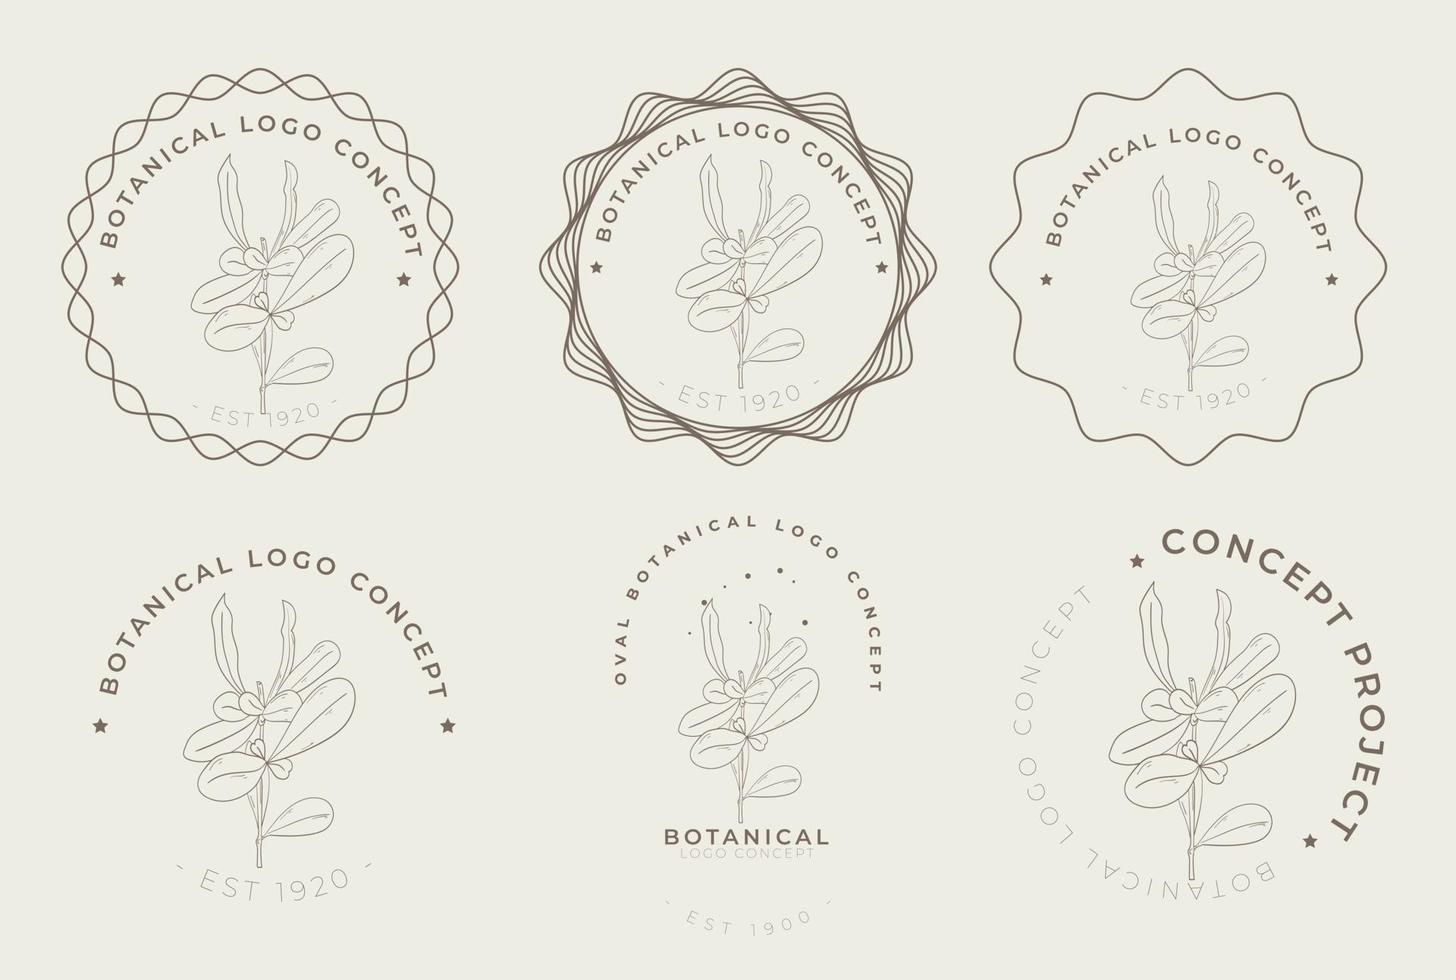 pack de logo minimal floral botanique de style rétro vintage vecteur